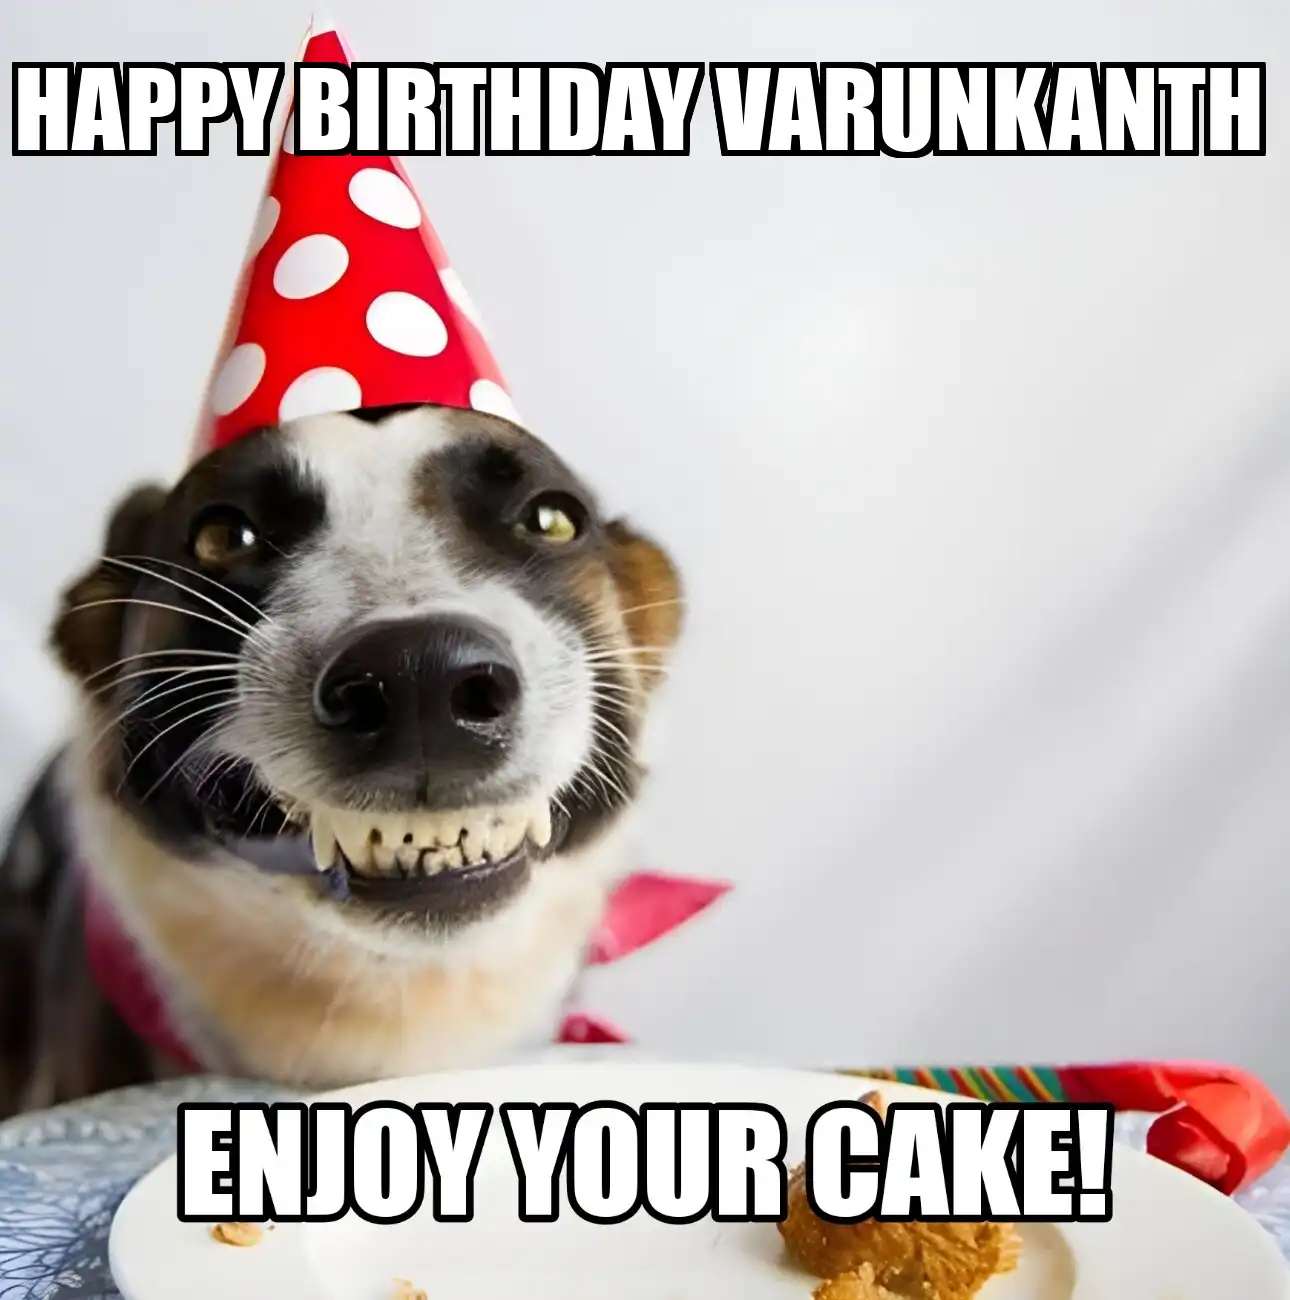 Happy Birthday Varunkanth Enjoy Your Cake Dog Meme